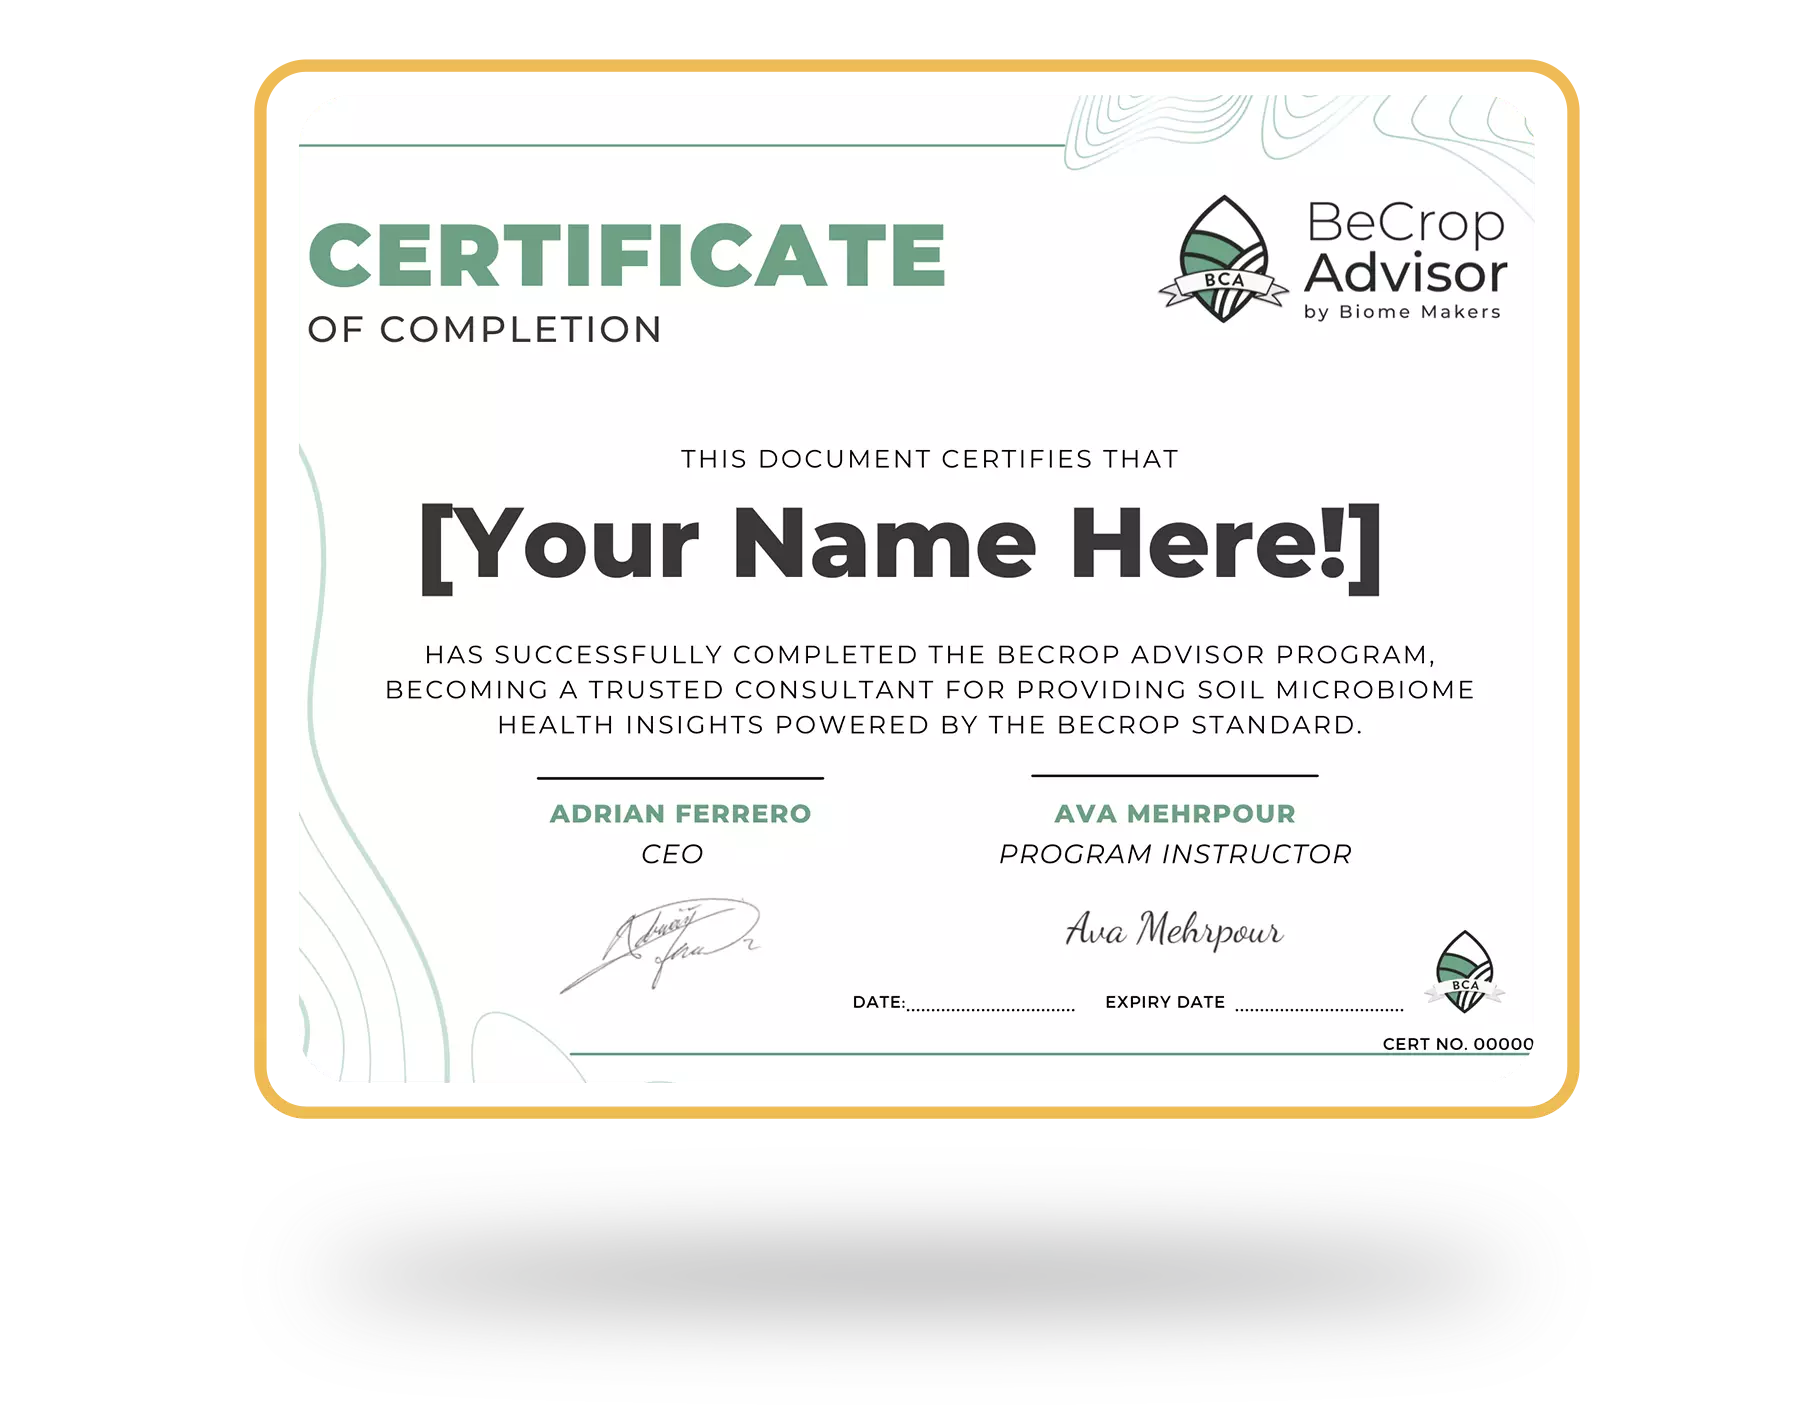 becrop-advisor-certificate